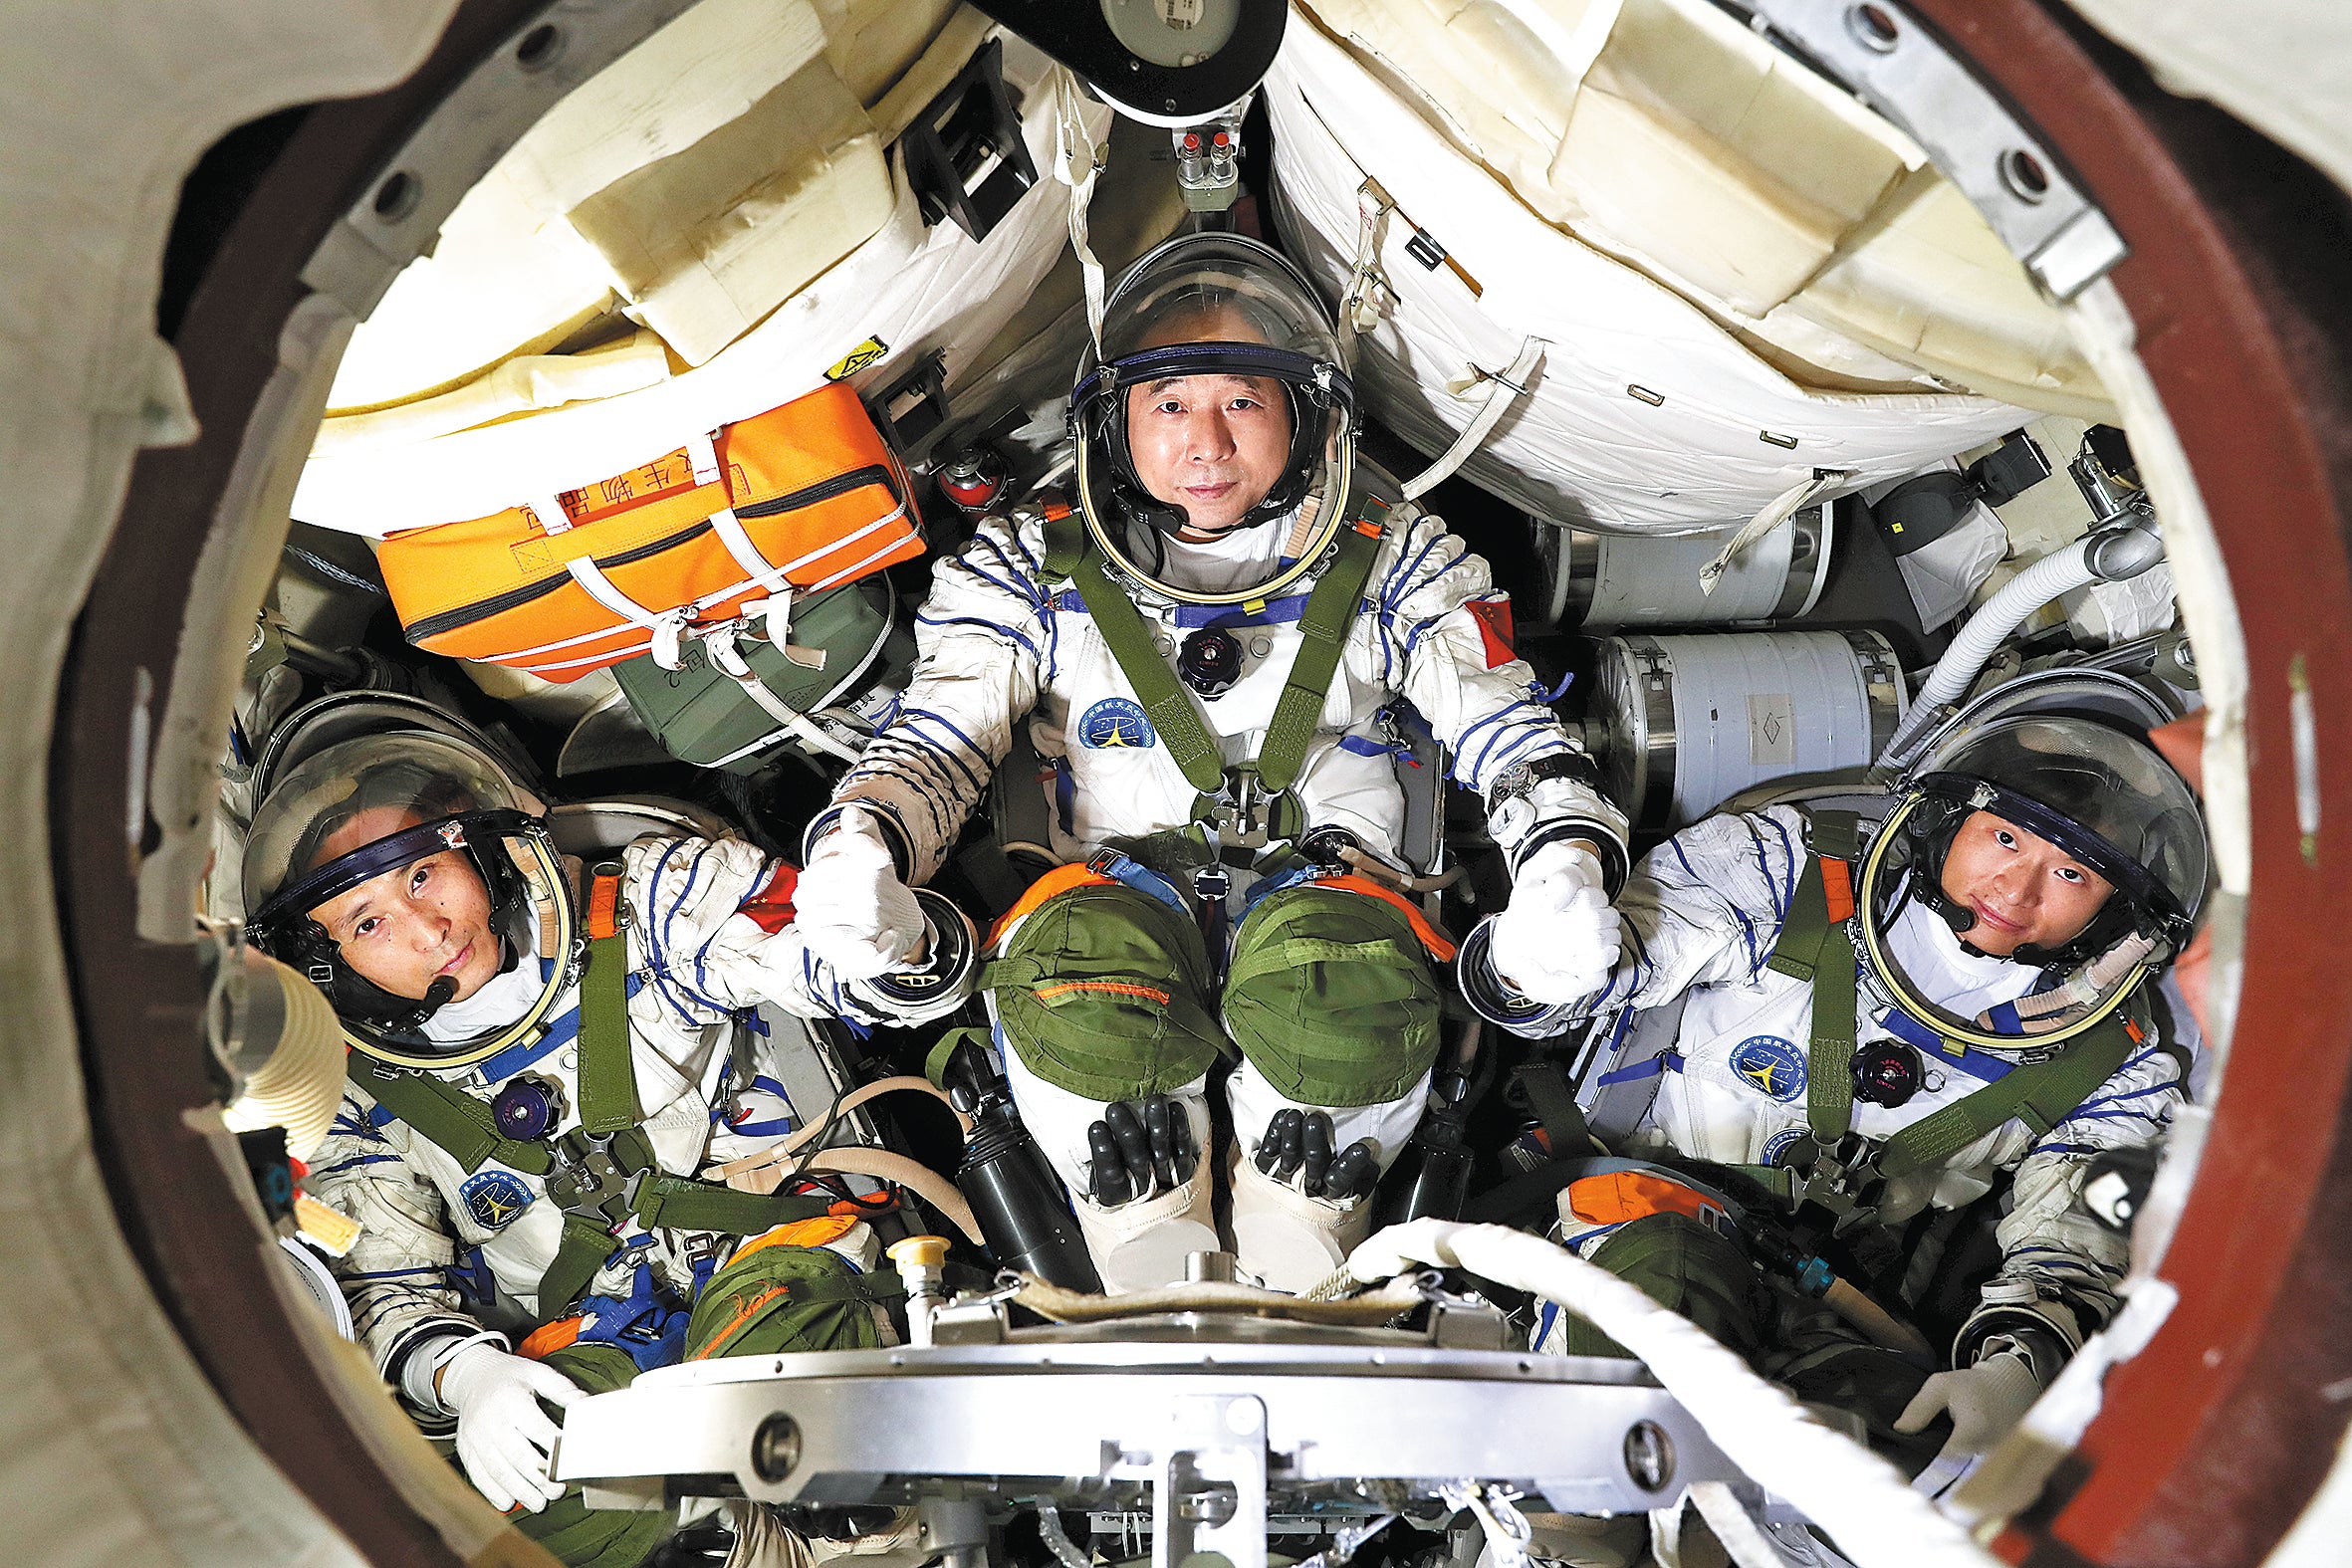 Shenzhou XVI crew members Jing Haipeng, centre, Zhu Yangzhu, left, and Gui Haichao receive training in a spaceflight simulator